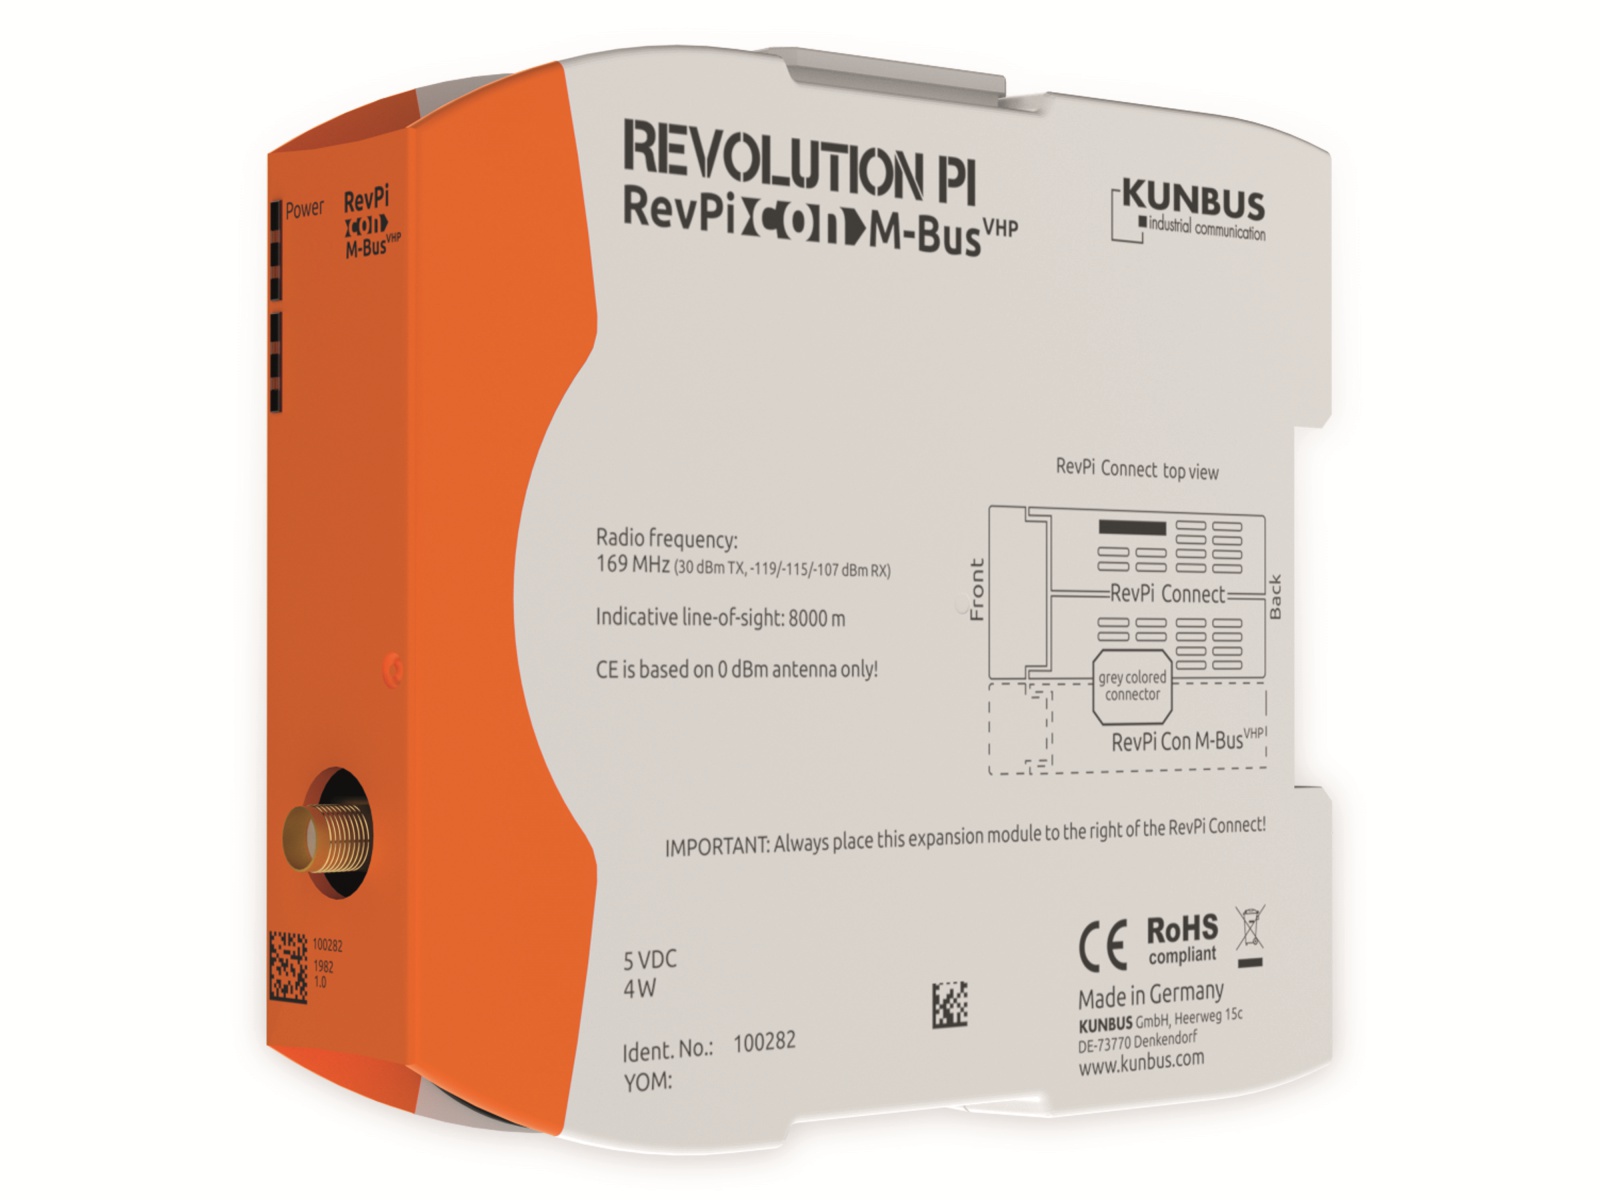 KUNBUS Revolution PI Erweiterungsmodul Con M-Bus VHP 169 MHz, PR100282